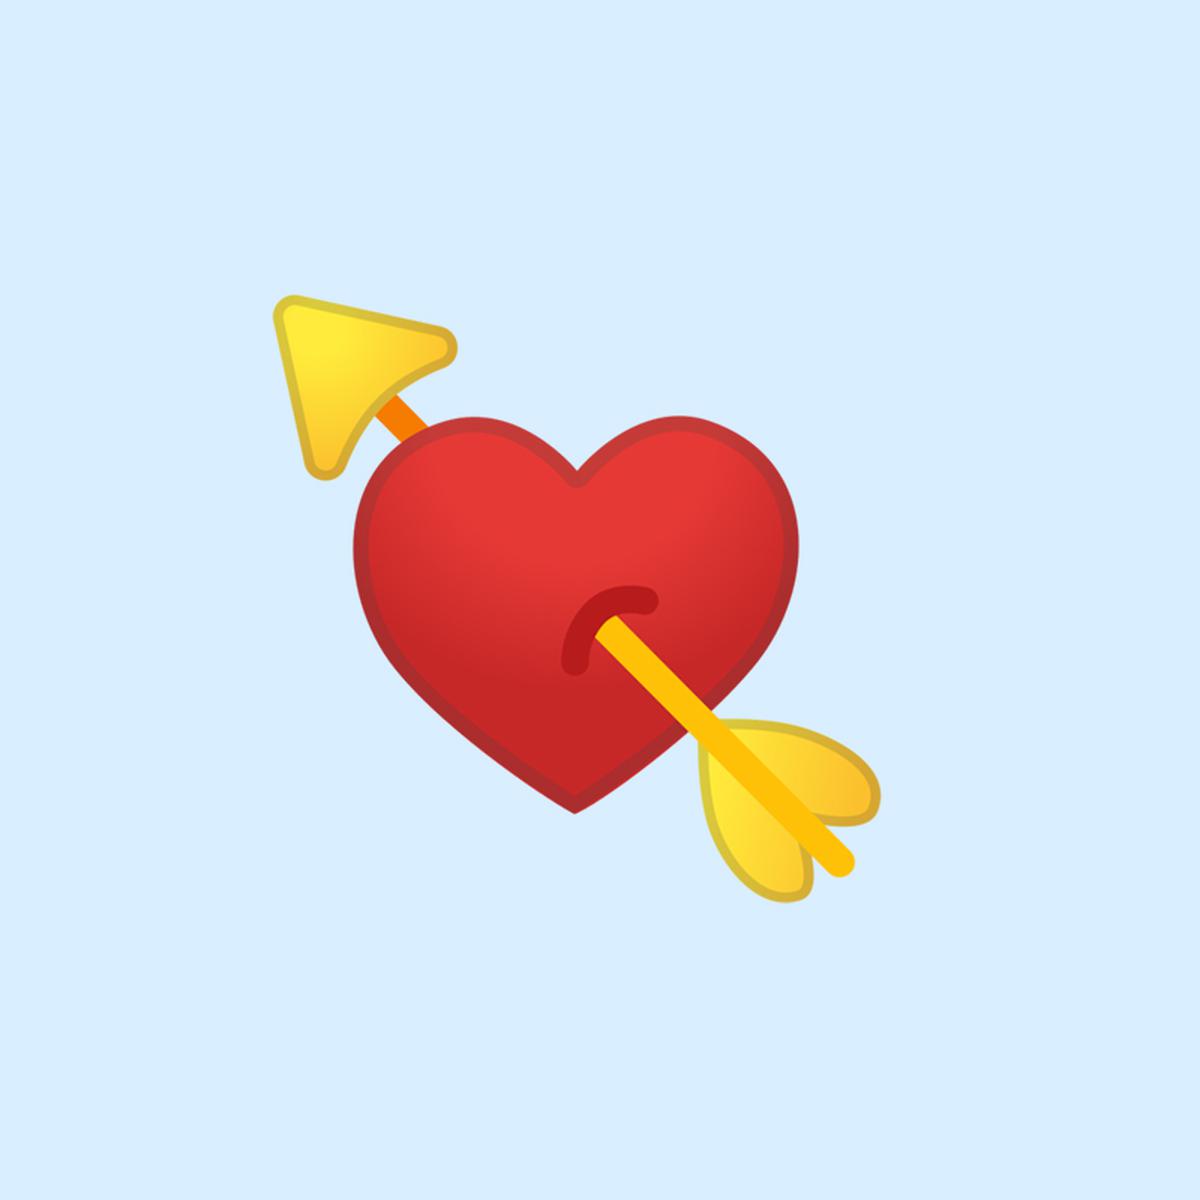 WhatsApp | Qué significa el emoji del corazón atravesado por una flecha |  Heart with Arrow | Meaning | Aplicaciones | Apps | Emoticones | Smartphone  | Celulares | Truco | Tutorial | Estados Unidos | España | México | NNDA |  NNNI | DEPOR-PLAY | DEPOR